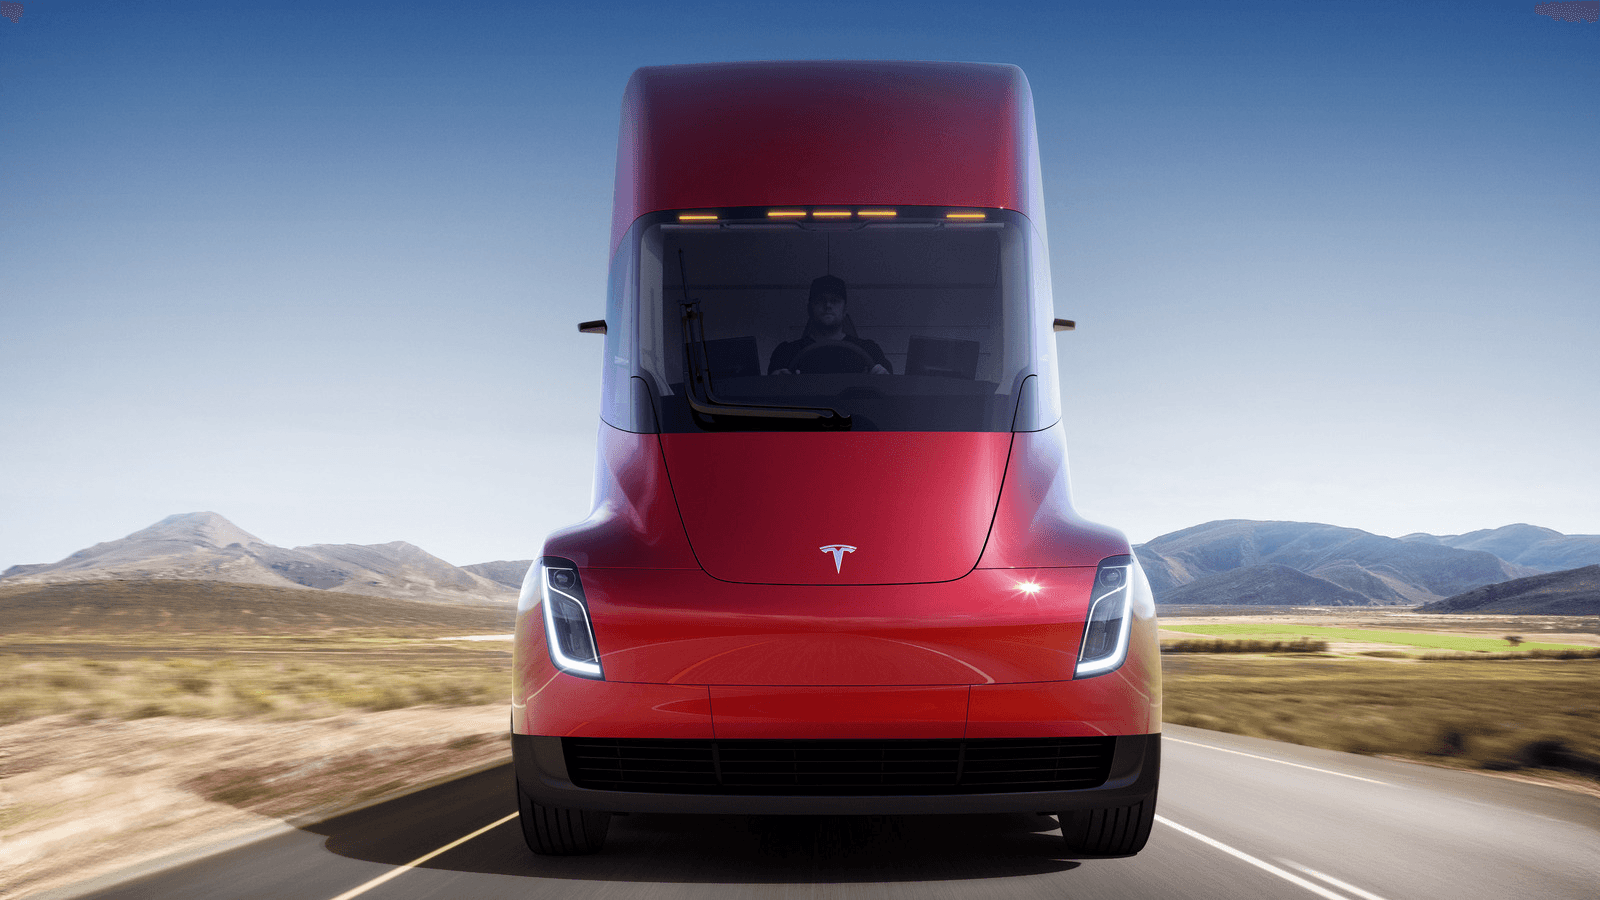 Tesla's new semi truck.